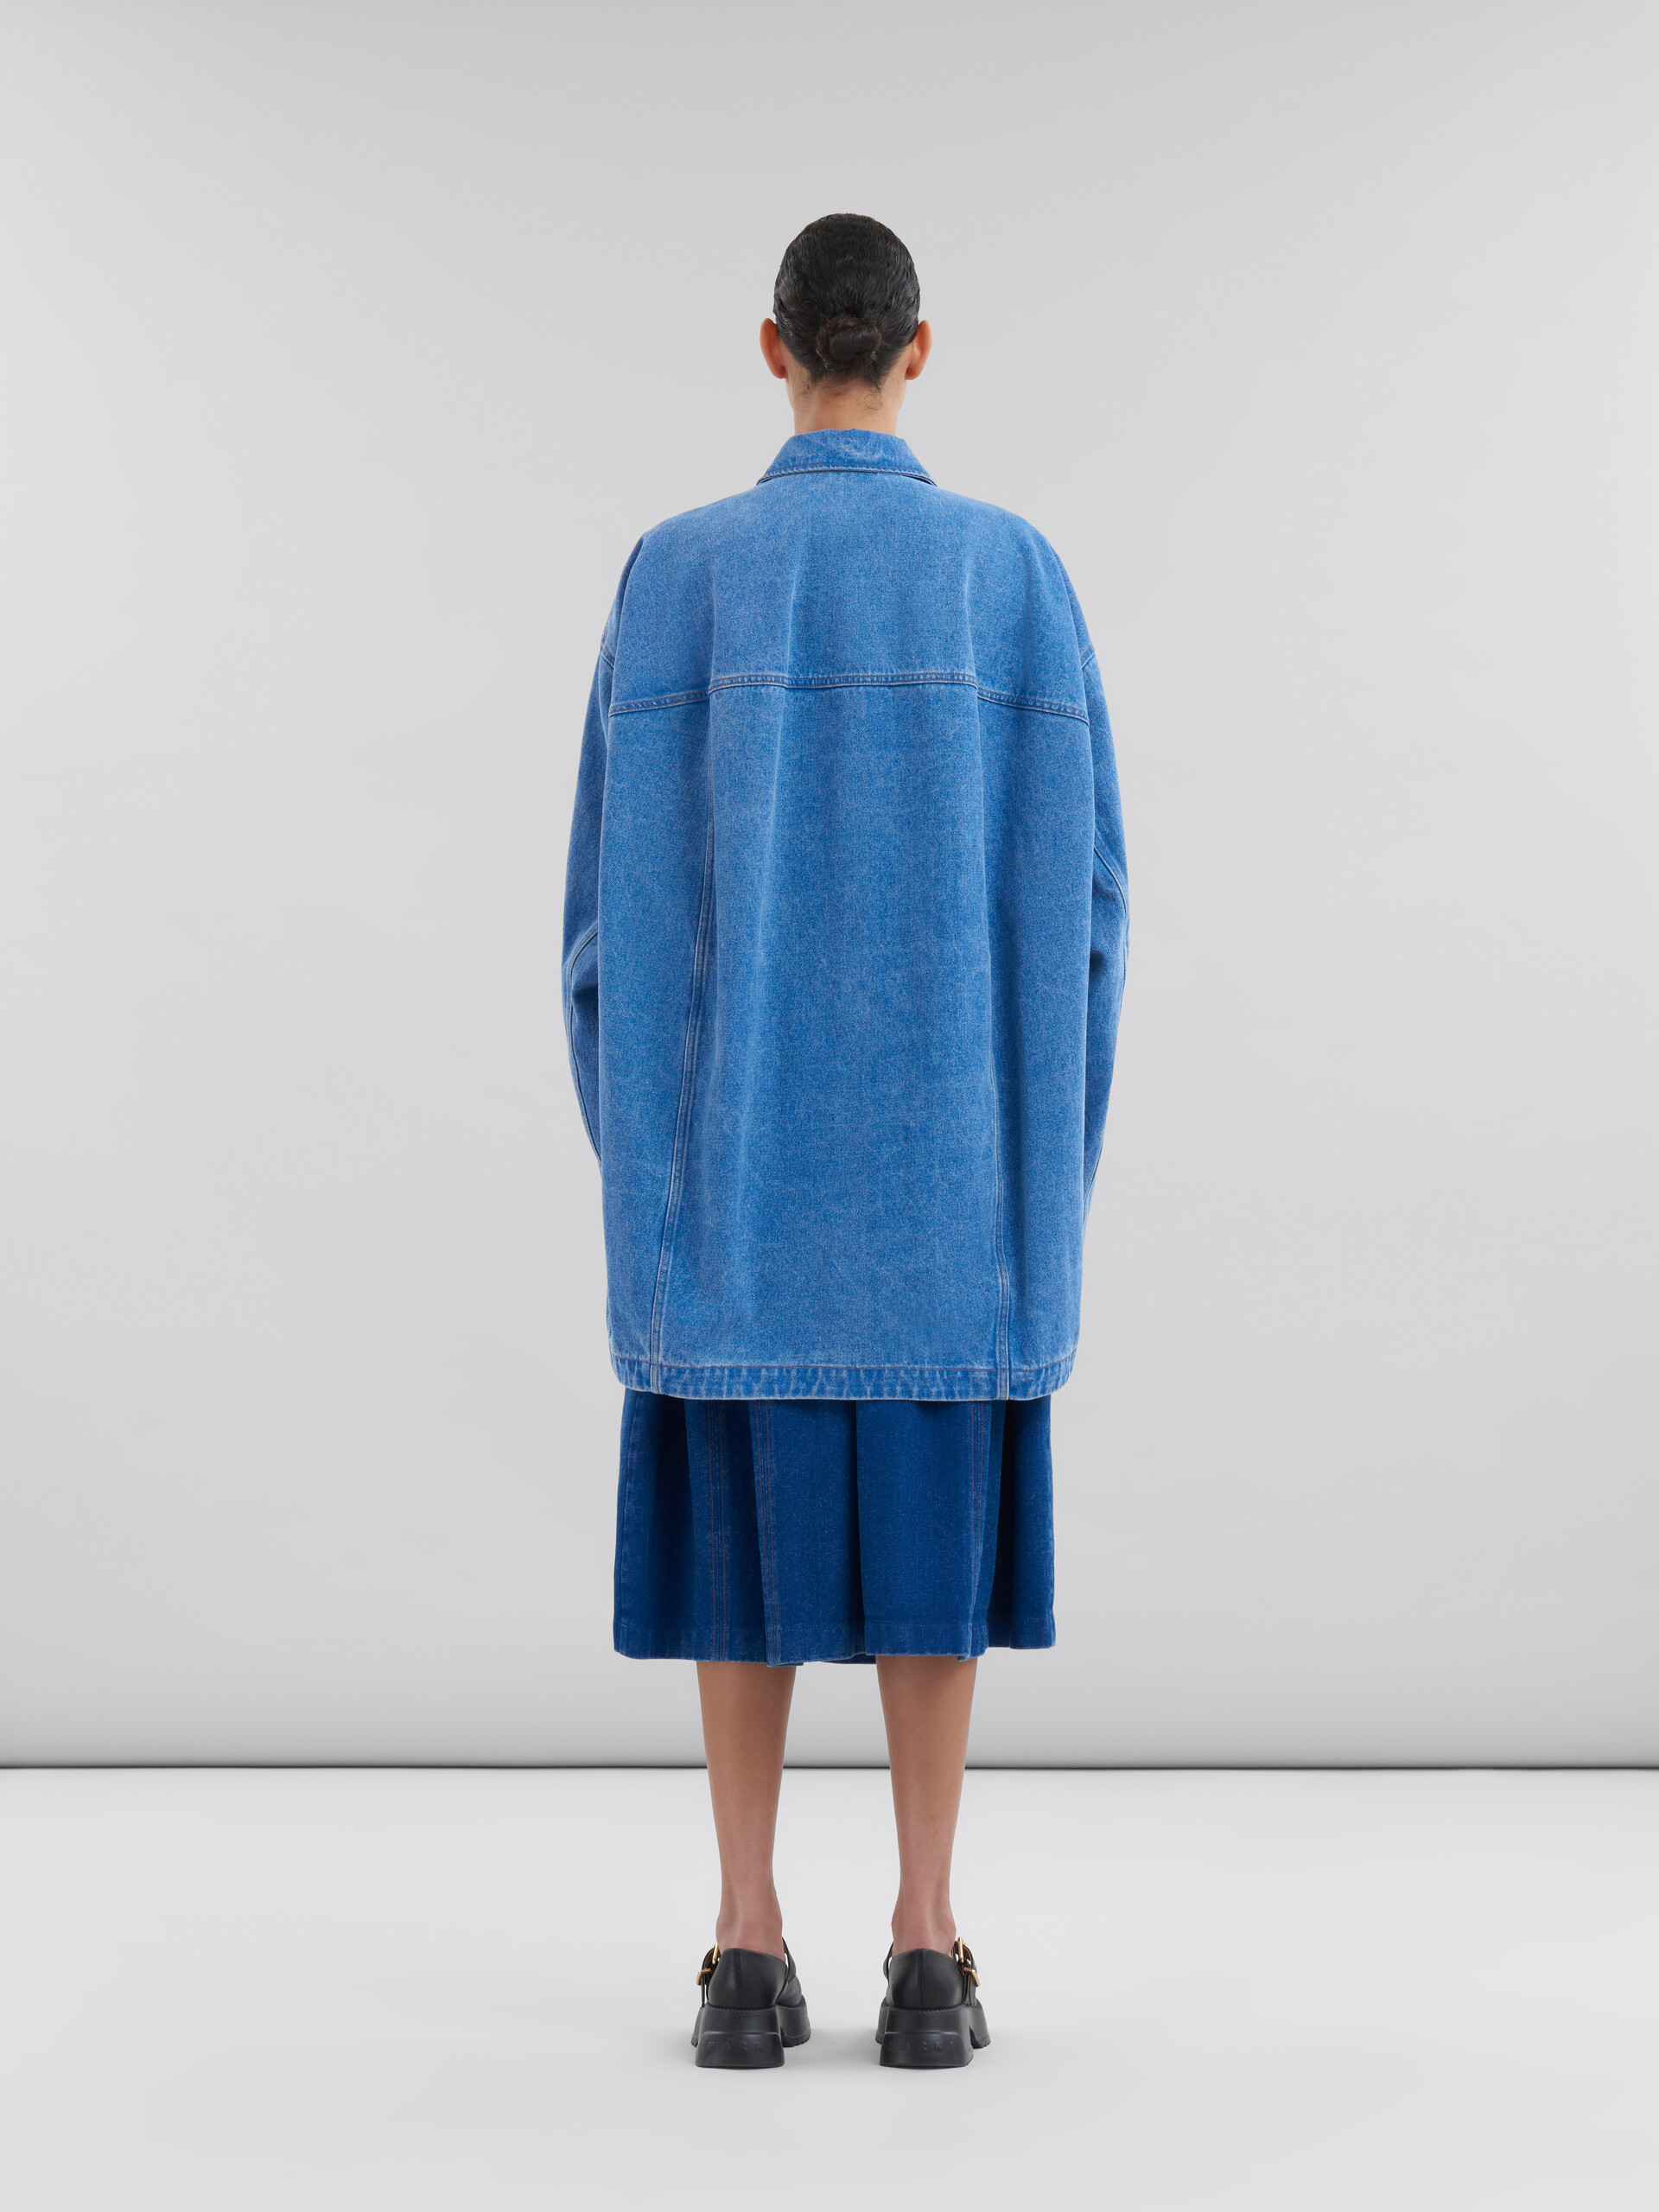 Veste en denim biologique bleu avec patch effet raccommodé Marni - Manteaux - Image 3